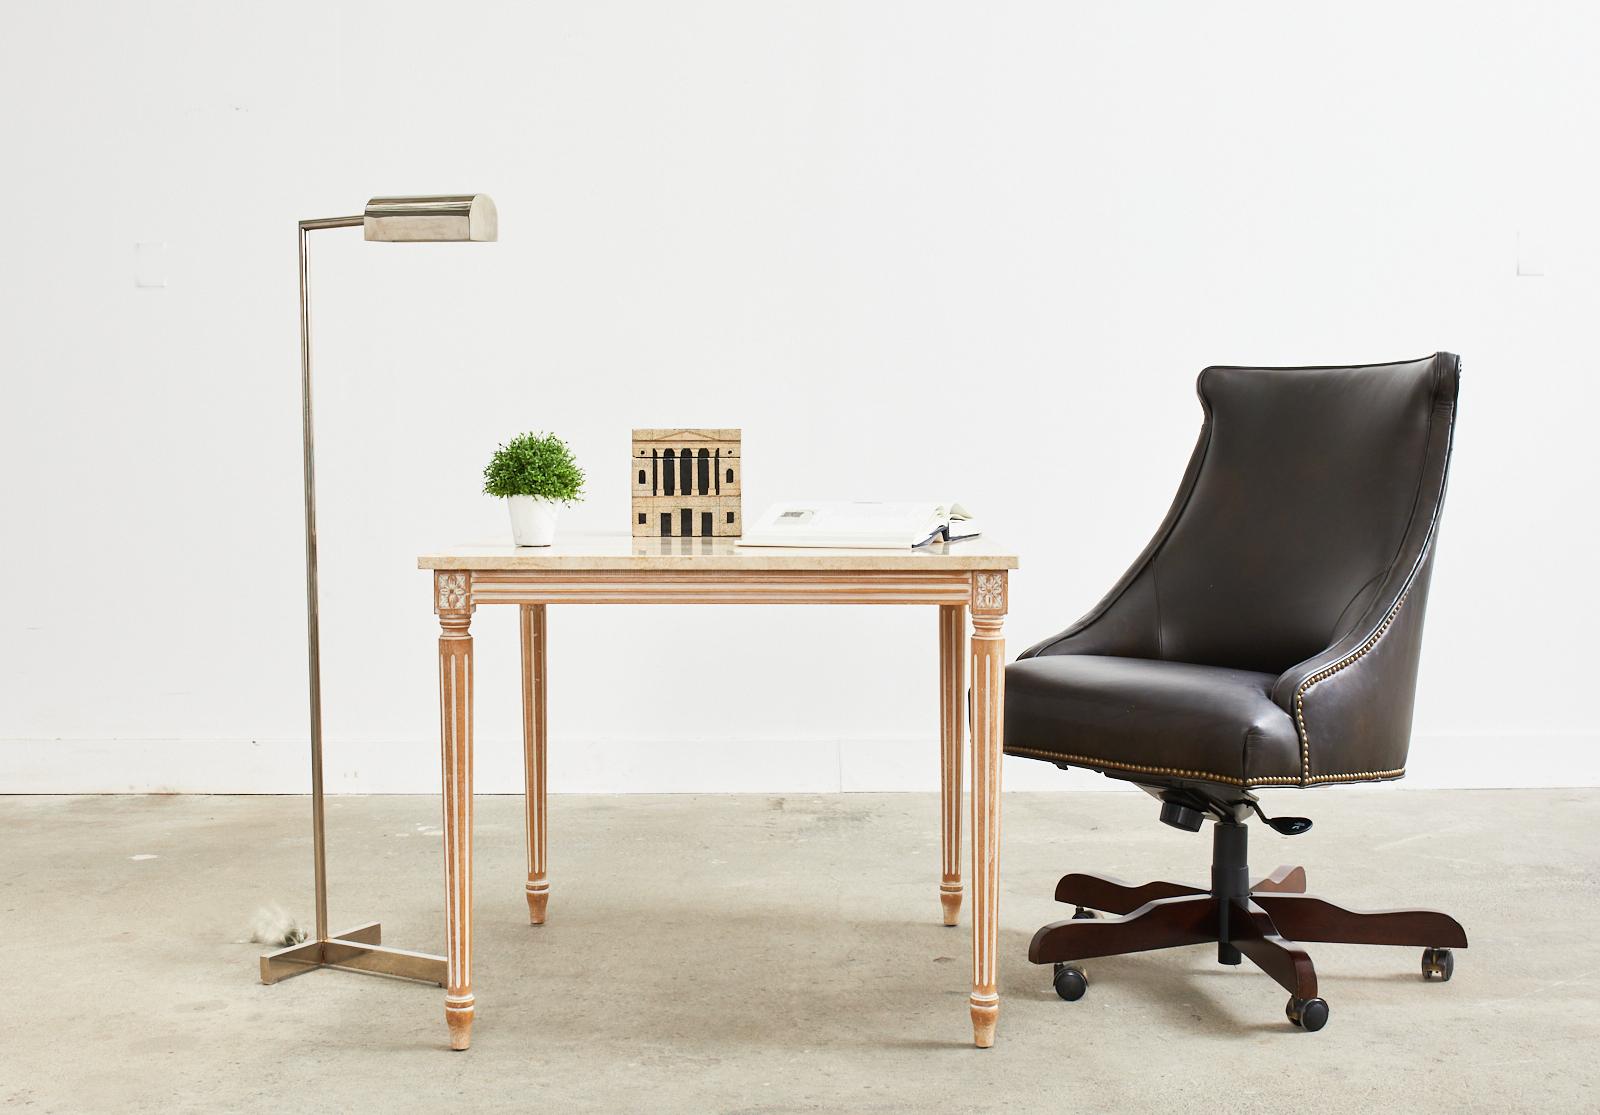 Fauteuil de bureau pivotant en cuir fabriqué par Century Furniture. Le fauteuil est doté d'un cadre svelte en forme de gondole, fini en cuir espresso foncé, bordé de têtes de clous en laiton dans le goût regency. La chaise est réglable en hauteur, y